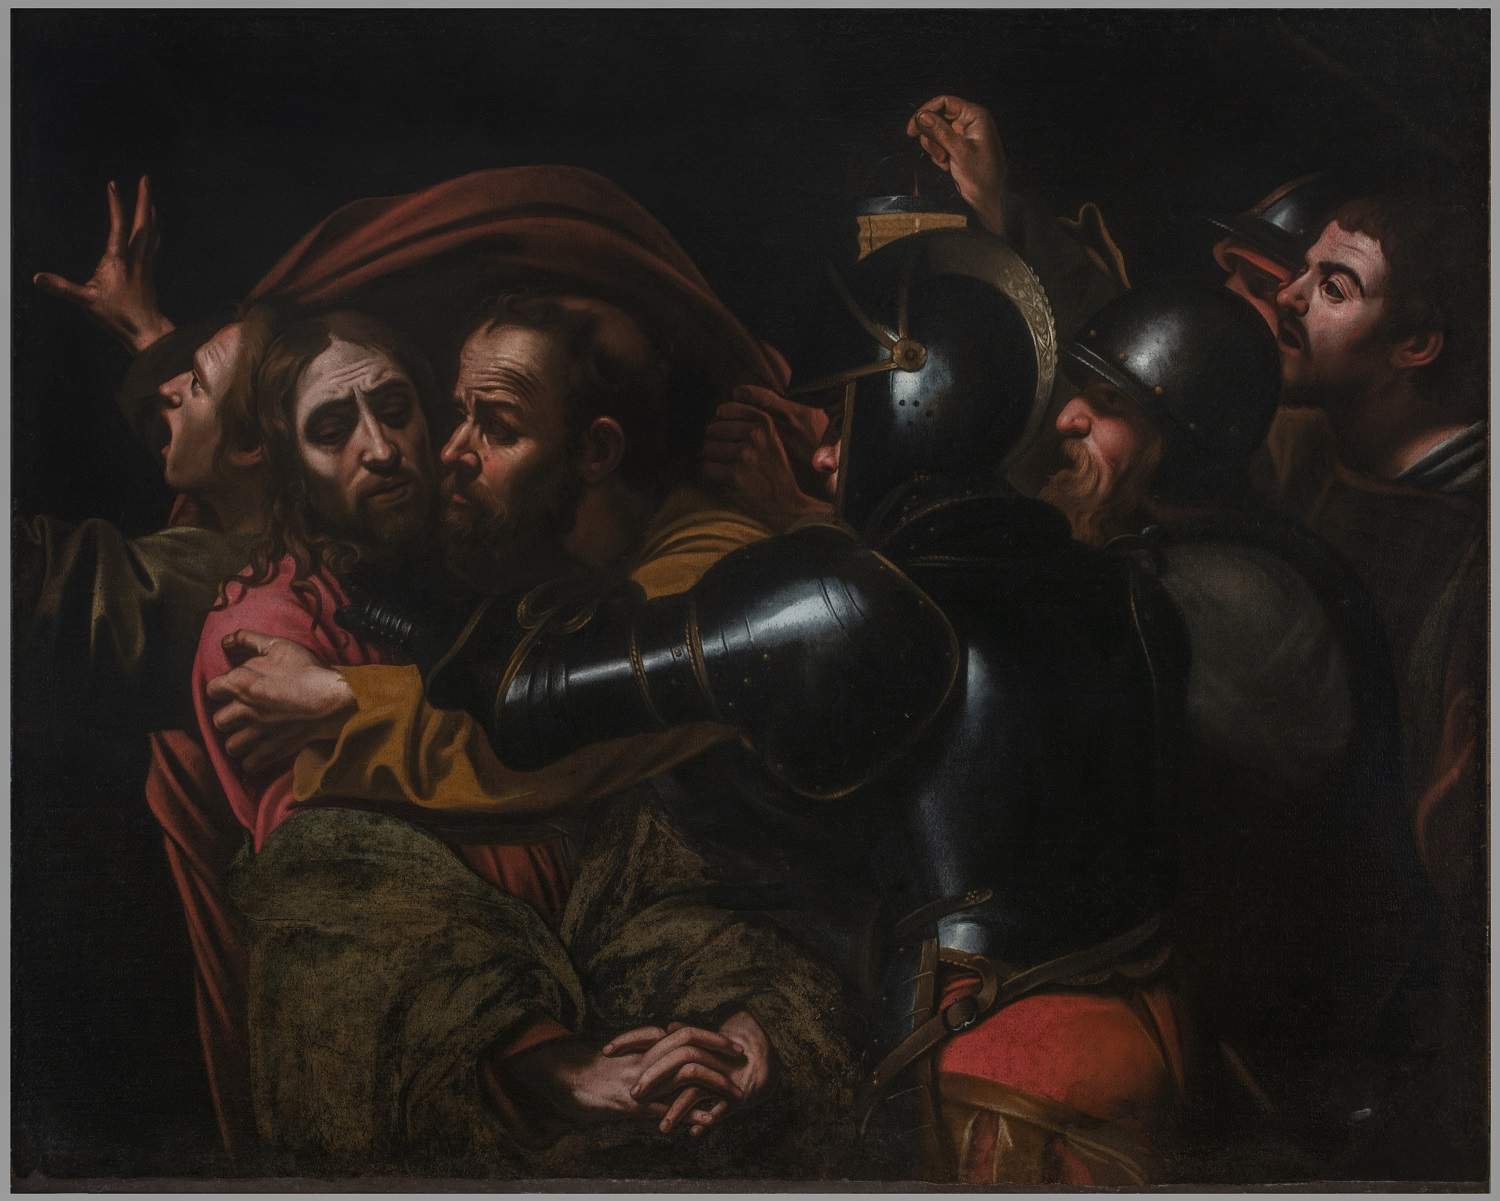 La copie de La capture du Christ du Caravage réapparaît au Palazzo Pitti après des décennies d'absence.